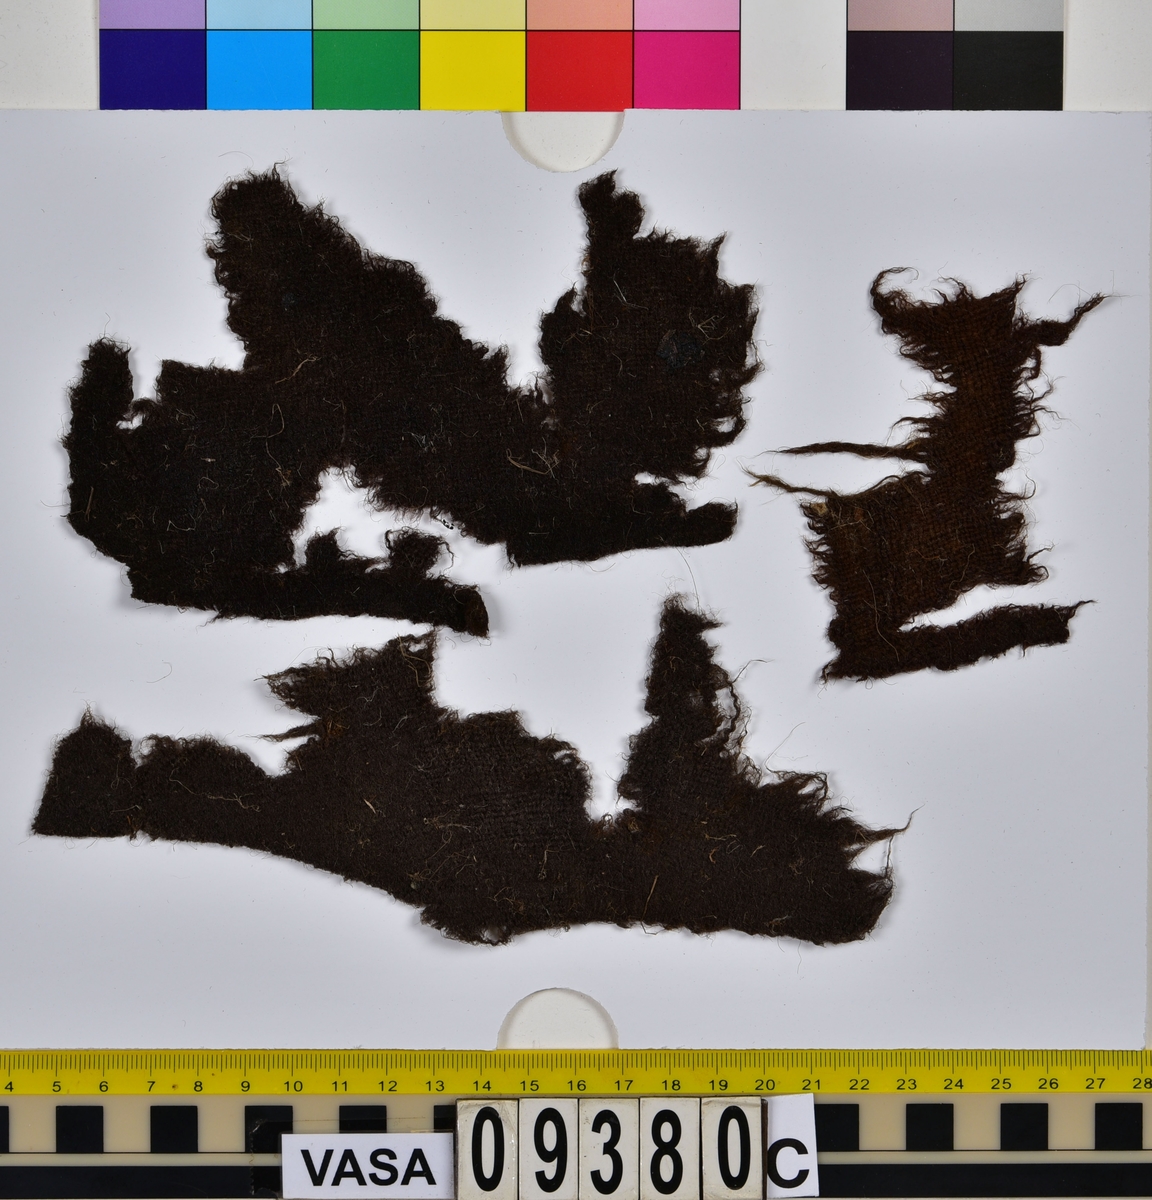 Fyndnumret innehåller fyrtio stycken textilfragment som kommer från sju olika textilier. Tre av dem är tyger av ull vävda i tuskaft, två är tråd varav den ena är av silke och den andra av ull och två är filtade fragment av ull. Flera av fragmenten är troligen dräktdelar. Trådarna är sydda till några av de filtade fragmenten.
.
Textildokumentation 2019.
Textil, fyndnumret består av 40 st fragment uppdelade på 09380a-c.
Kontextgrupp ÖB25 (övriga fyndnummer i gruppen: 03395, 09387 och 27905).
Relaterade fynd i andra kontextgrupper: inga
.
Fnr 09380a Typnr ÖB25.4:1-31.
Sammanfattning -  31 stycken textilfragment av ull, filtade. Färgen är nu mörkt brun, originalfärg okänd. Fibrerna är relativt grova, raka och väl synliga, det vill säga att filten är olik den fina hattfilt som finns i flera fyndnummer i samlingen. En kant på ett av de större fragmenten kan möjligen vara tillskuren. I övrigt finns inga originalkanter eller andra spår av sömmar, tillskärning eller liknande. På båda sidors yta finns en del spridda växtfibrer.
.
Fnr 09380b Typnr ÖB25.5:1-2.
Sammanfattning - Två textilfragment av ull, filtade. Färgen är brun i en gröntonad nyans, originalfärg okänd. Filten är styv, fibrerna är fina. Likadan filt finns i 09387 ÖB25.5:3-4. 
Fragment ÖB25.5:1 - Det större fragmentet. Fragmentet har en tillskuren kant, inga sömmar finns. Ytan på sida A är bättre bevarad än sida B och har en homogen färg. Ytan på sida B är ojämn, där ytan är bortnött är filten mer gröntonad. På båda ytorna finns mindre rester av växtfiber.
Fragment ÖB25.5:2 - Fragmentet har inga tillskurna kanter. I fragmentet sitter fast flera trådar, se 09380b ÖB25.6:1-2 samt 09380b ÖB10:1-2. 
.
Fnr 09380b Typnr ÖB25.6:1-2.
Sammanfattning - Två trådar av silke. Trådarna sitter fast i fragment 09380b ÖB25.5:2 (filt). I samma fragment sitter även trådarna 09380b ÖB25.10:1-2. Likadan tråd finns i 09387 ÖB25.6:3.
Fragment (tråd) ÖB25.6:1 - Cirka 200 mm lång. Är sydd igenom det filtade fragmentet 09380b ÖB25.5:2 på två ställen. Mellan genomförningarna ligger den över tråden 09380b ÖB25.10:1. Tråden är 2-trådig och s-tvinnad. Tråden har en knut (eller dylikt).
Fragment (tråd) ÖB25.6:2 - Cirka 50 mm lång. Sitter fast på en del av tråd 09380b ÖB25.10:2. Tråden är både knuten och tvinnad till denna. På båda trådarna finns rester av någon substans. Tråden är 2-trådig och s-tvinnad. 
.
Fnr 09380b Typnr ÖB25.10:1-2.
Sammanfattning - Två trådar av ull. Trådarna sitter fast i 09380b ÖB25.5:2 (filt). I samma fragment sitter även trådarna 09380b ÖB25.6:1-2 fast. Eventuellt är tråden 09387 ÖB25.11:1-5 av samma typ trots att den tråden är 4-trådig. Det är möjligt att två av trådarna som tvinnats till tråden ÖB25.10 brutits ned och nu är hel försvunna, tendenser att detta har hänt i partier även på 09387 ÖB25.11:1-5 finns.
Fragment (tråd) ÖB25.10:1 - Cirka 110 mm lång. Är i ena änden hoptvinnad med ÖB25.10:2. Är på större delen av sin längd hoptvinnad, hopknuten och hoplimmad(?) med tråden 09380b ÖB25.6:2. Måtten är ungefärliga då mätning varit svår pga att tråden sitter ihop med andra trådar.
Fragment (tråd) ÖB25.10:2 - Cirka 85 mm lång. Är i ena änden hoptvinnad med ÖB25.10:1. Sitter fast under tråden 09380b ÖB25.6:1.
.
Fnr 09380c Typnr ÖB25.7:1.
Sammanfattning - Ett textilfragment av ull vävt i tuskaft. Färgen är nu brun, originalfärg okänd. Textilien är något ruggad på sida A. På sida B finns ingen lugg. Väven är tät och jämn. Garnet är jämt spunnet. Fragmentet har en tillskuren kant som har ett brott mitt i. Enstaka hål finns längs kanten, troligen efter en söm. På sida A finns rester av växtfibrer, enstaka rester finns även på sida B. Typen liknar 09380c ÖB25.8:1.
.
Fnr 09380c Typnr ÖB25.8:1.
Sammanfattning - Ett textilfragment av ull vävt i tuskaft. Färgen är nu brun, originalfärg okänd. Tyget har bitvis en ruggad yta på båda sidor. Väven är tät och jämn men trådsystemen ligger inte i rät vinkel på hela fragmentet (tyget har troligen brustit och dragits isär). Fragmentet har tre tillskurna kanter, hål efter sömmar kan anas. På båda sidor finns rester av växtfibrer. Typen liknar 09380c ÖB25.7:1.
.
Fnr 09380c Typnr ÖB25.9:1.
Sammanfattning - Ett textilfragment av ull vävt i tuskaft. Färgen är nu brun (rostbrun) originalfärg okänd. Garnet är mycket slätt och blankt, inga spår av ruggad yta finns. En av fragmentets kanter kan eventuellt vara en rest av en tillskuren kant eller en kant som brustit i sömmen. På båda sidornas yta finns rester av växtfibrer.